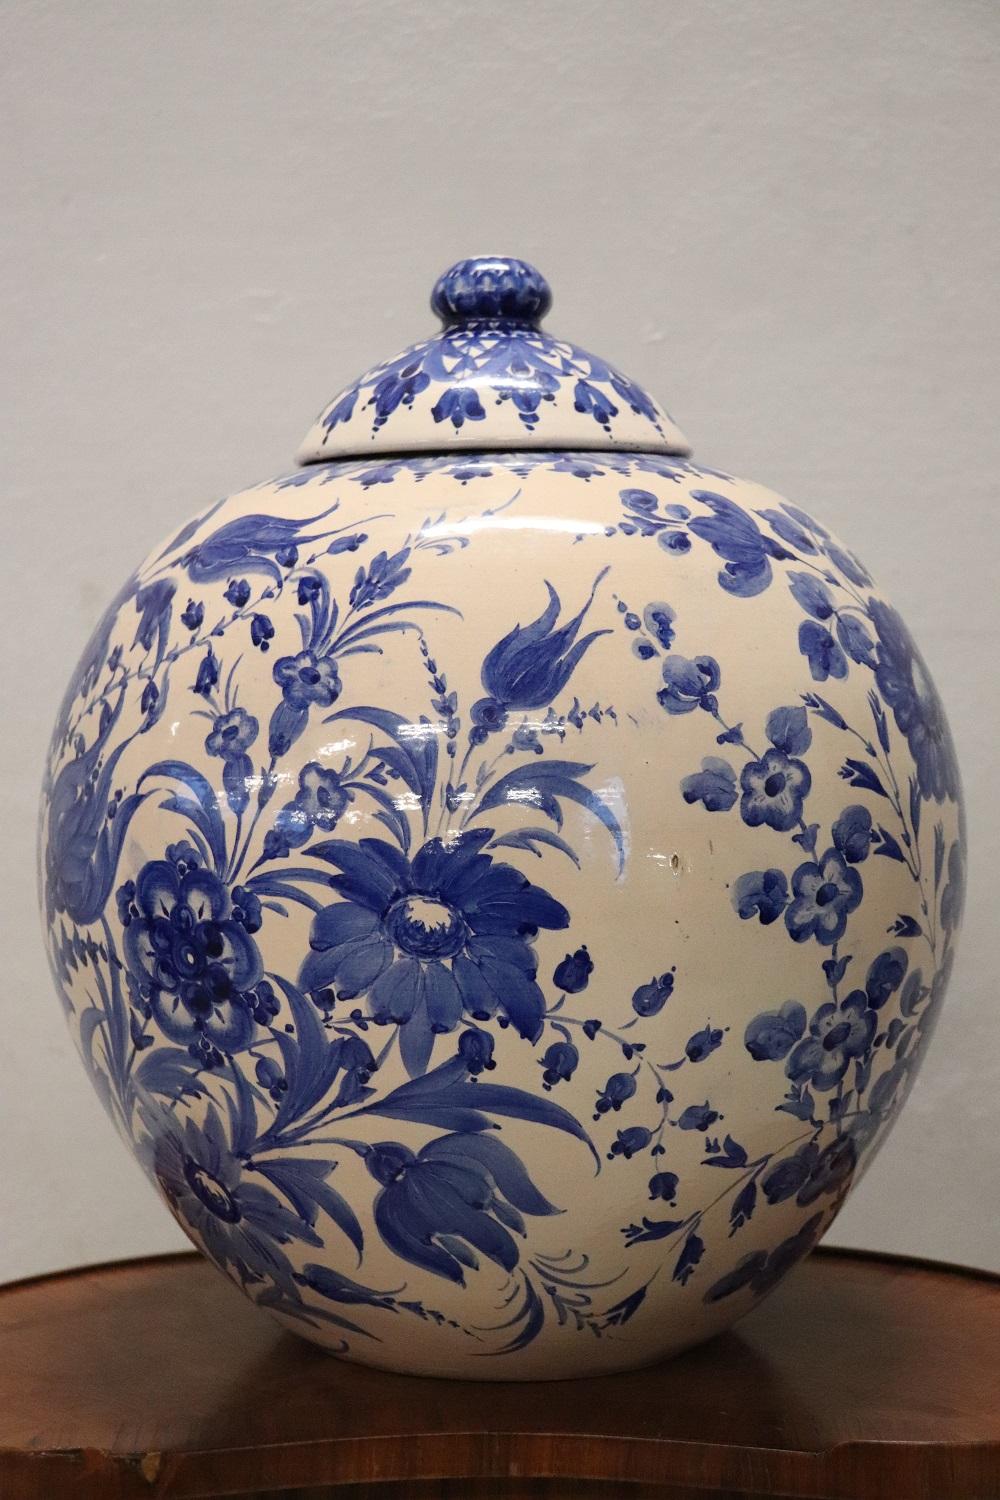 fiorentine porcellane ceramiche made in italy